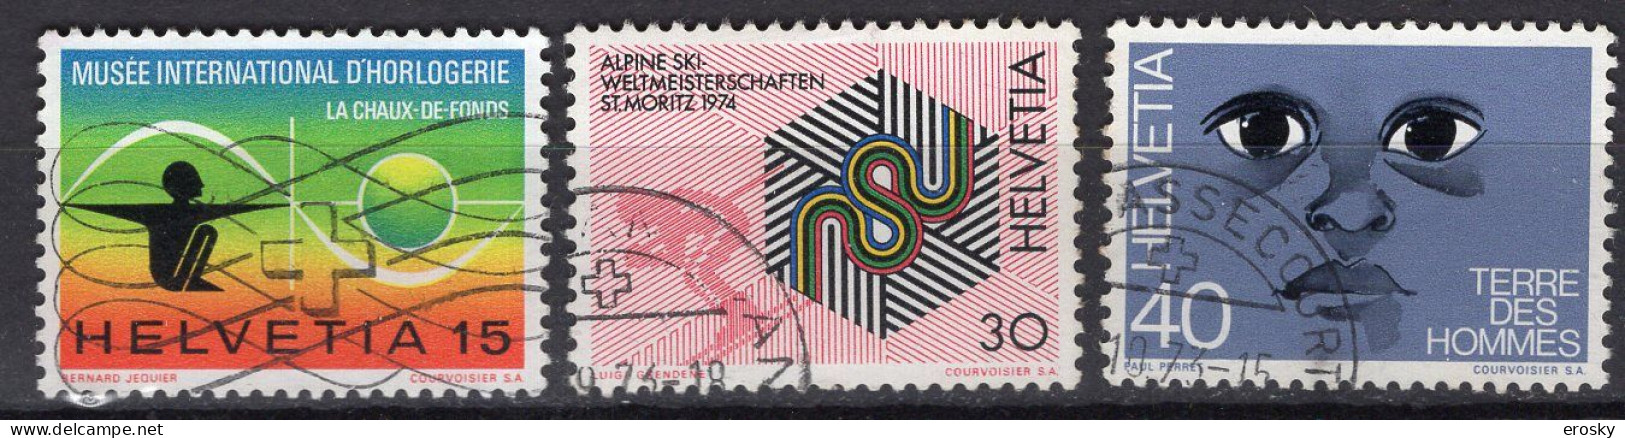 T2270 - SUISSE SWITZERLAND Yv N°930/32 - Usati